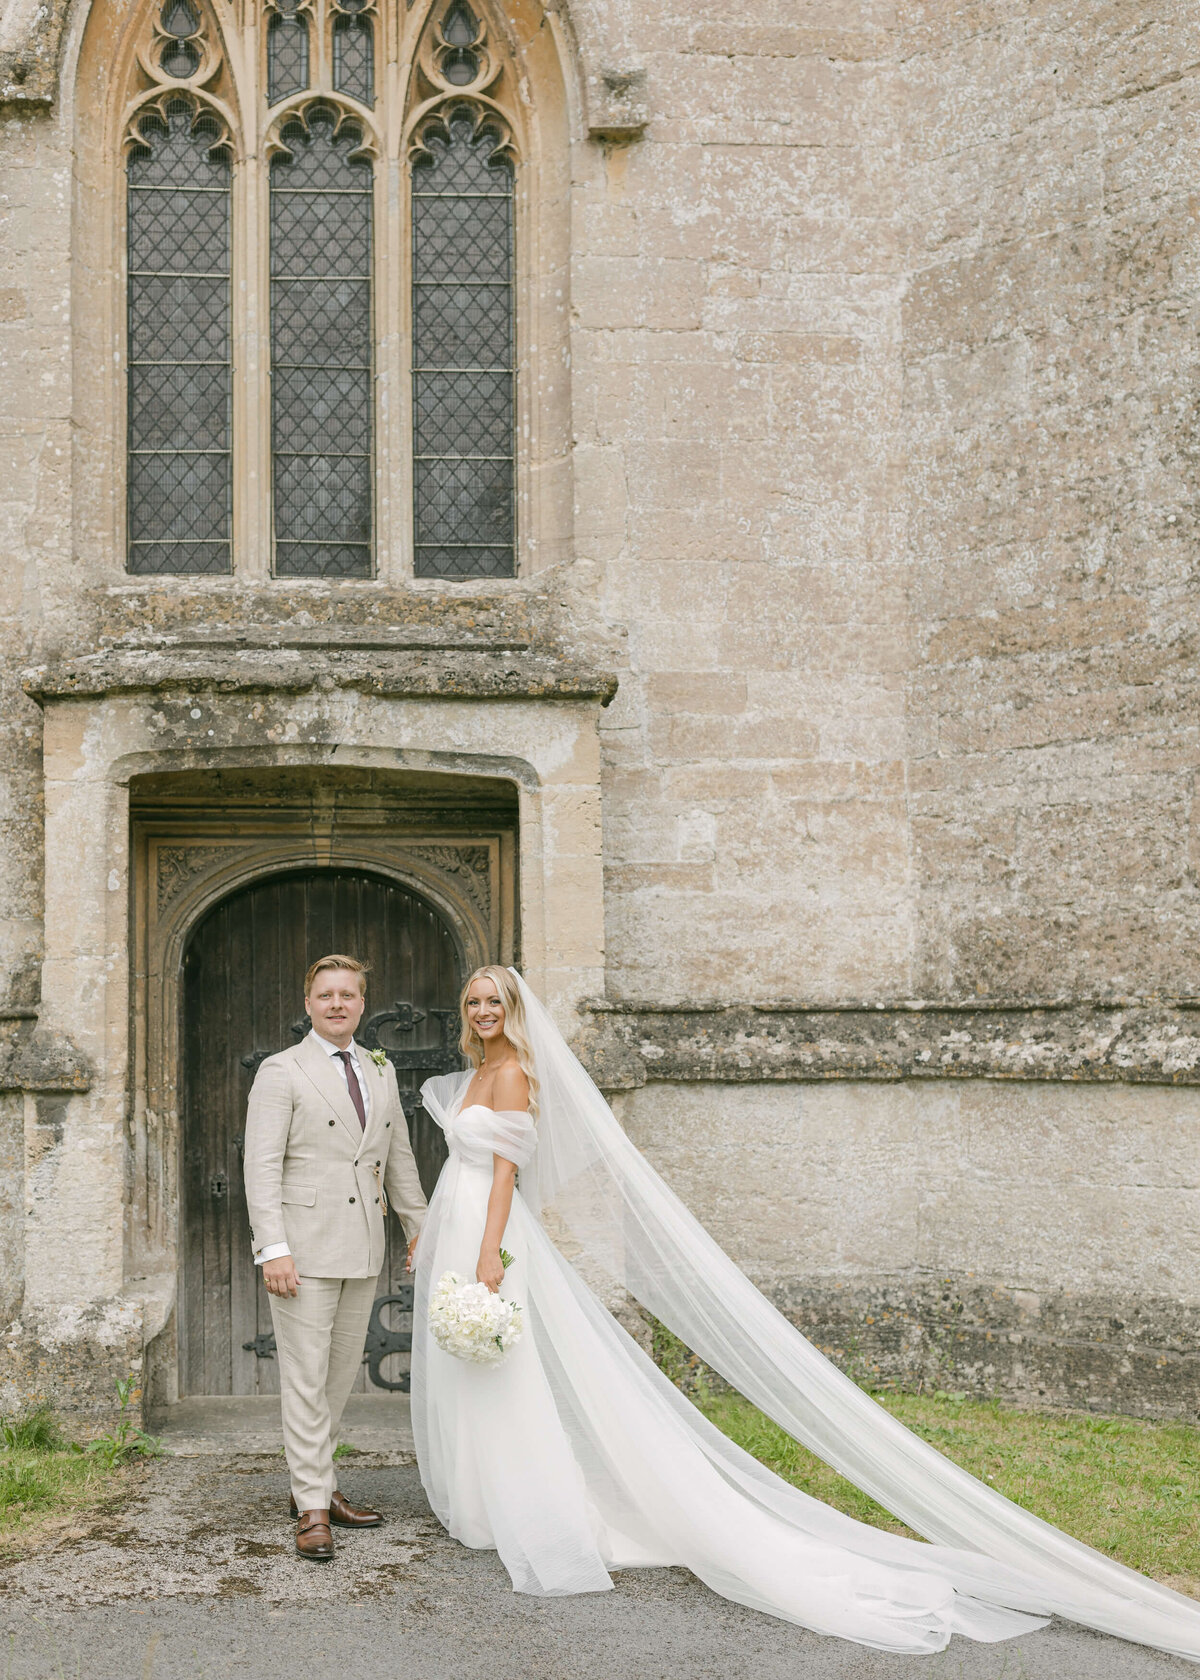 chloe-winstanley-weddings-cotswolds-bride-groom-church-door